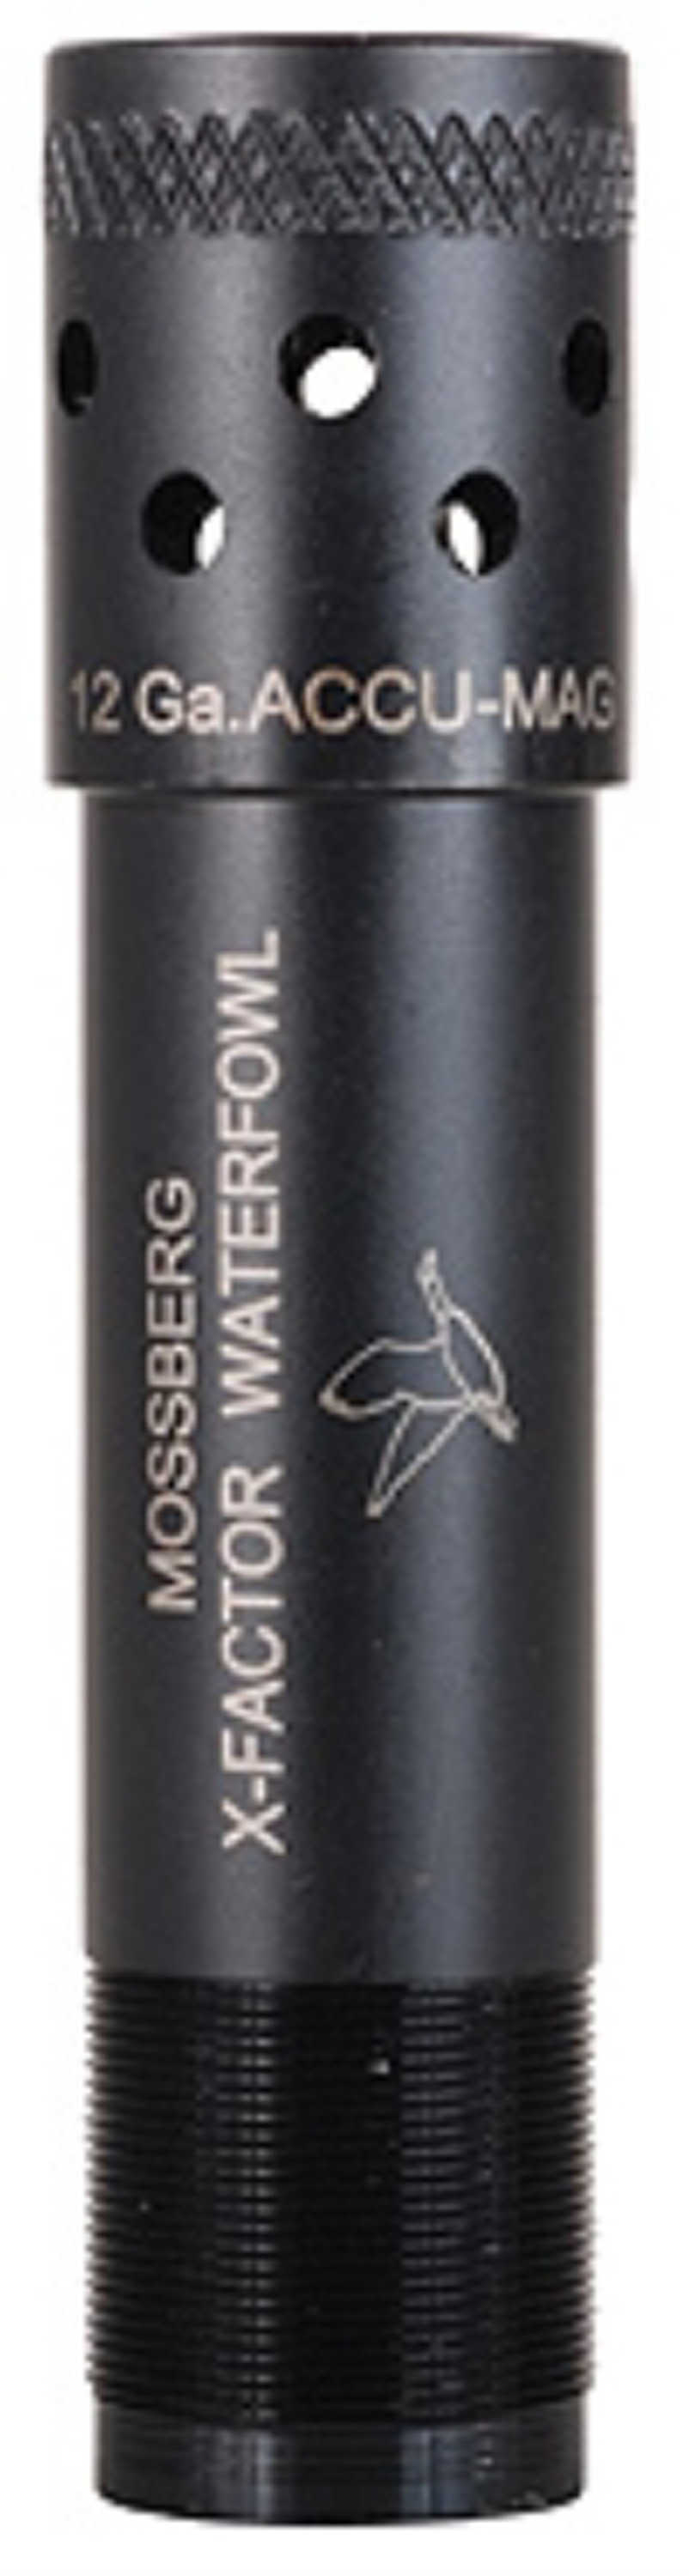 Mossberg Choke Tube 12 ga. 835, 935, 91 Improved Cylinder Waterfowl Model: 95290